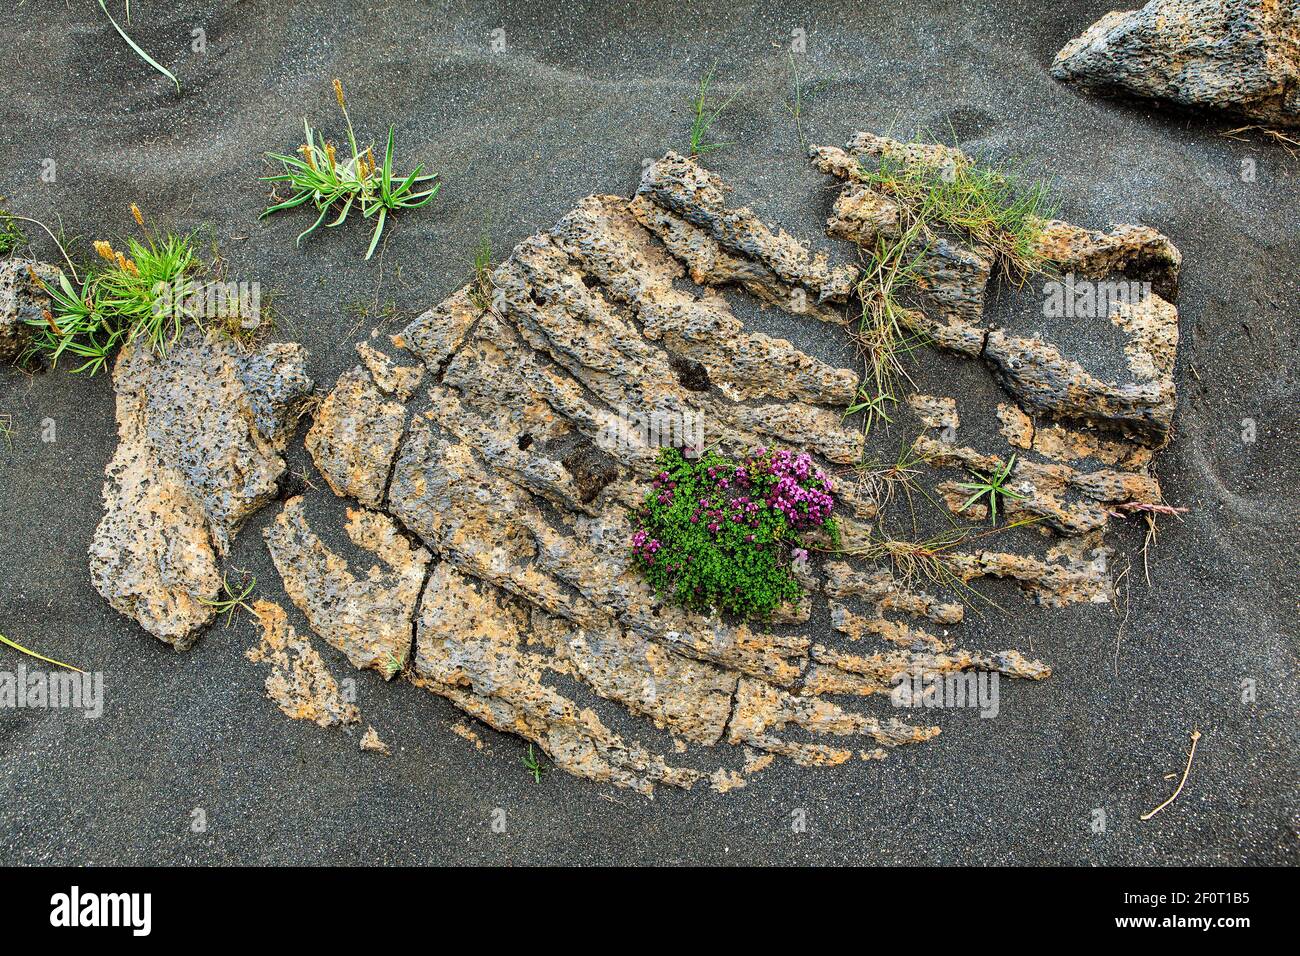 Thym arctique sur roches ignées, stonecrop, Islande Banque D'Images